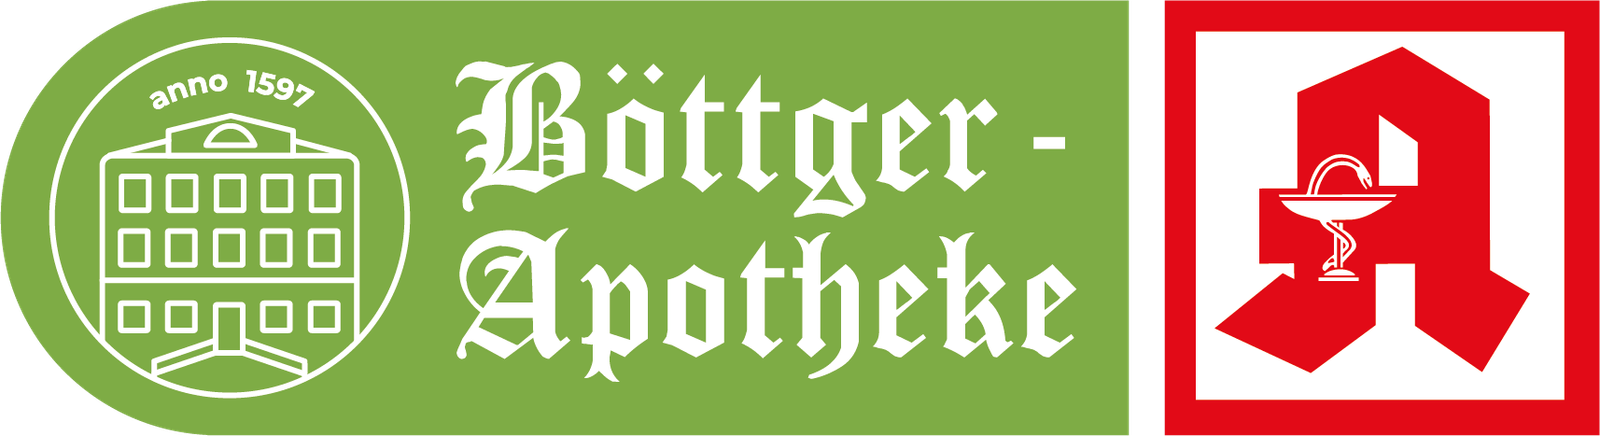 Böttger-Apotheke